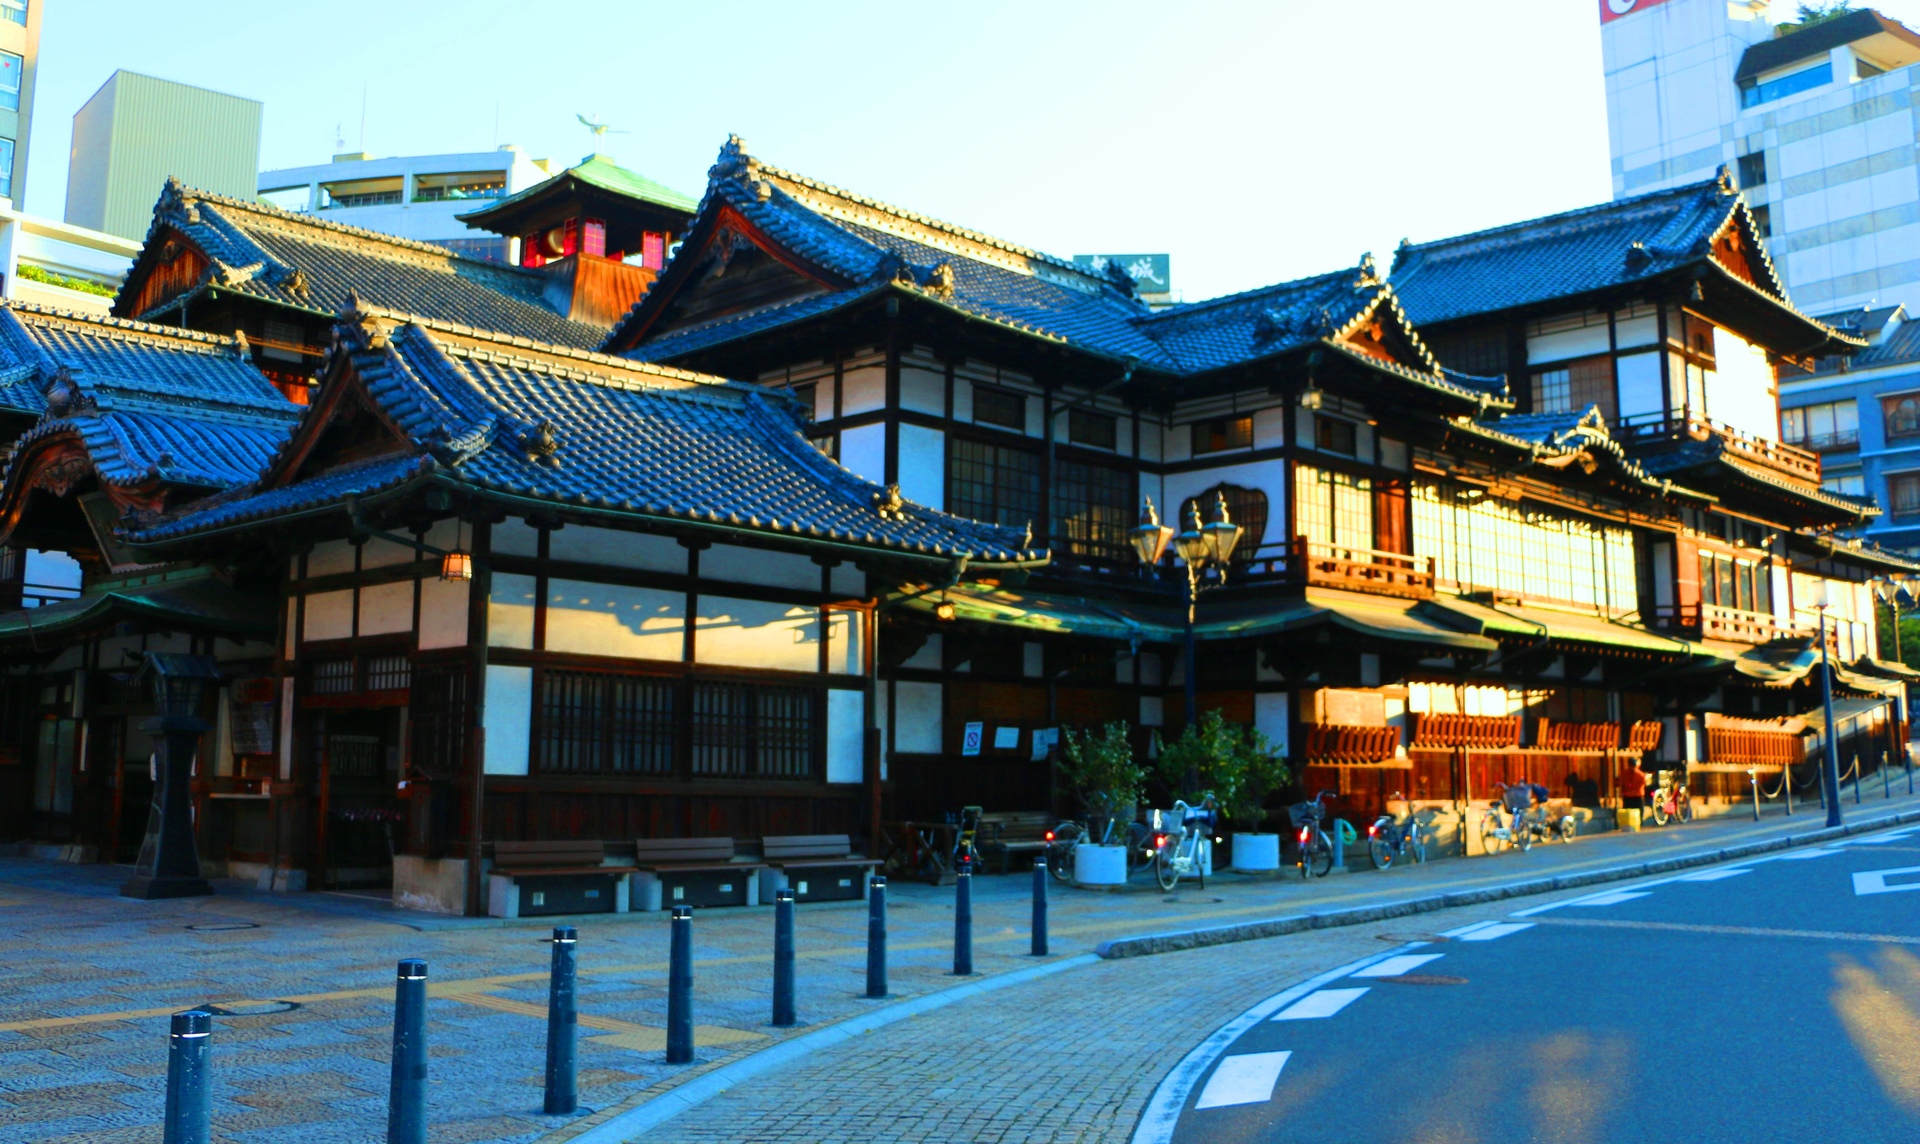 日本の風景 松山市の街並み 壁紙19x1144 壁紙館